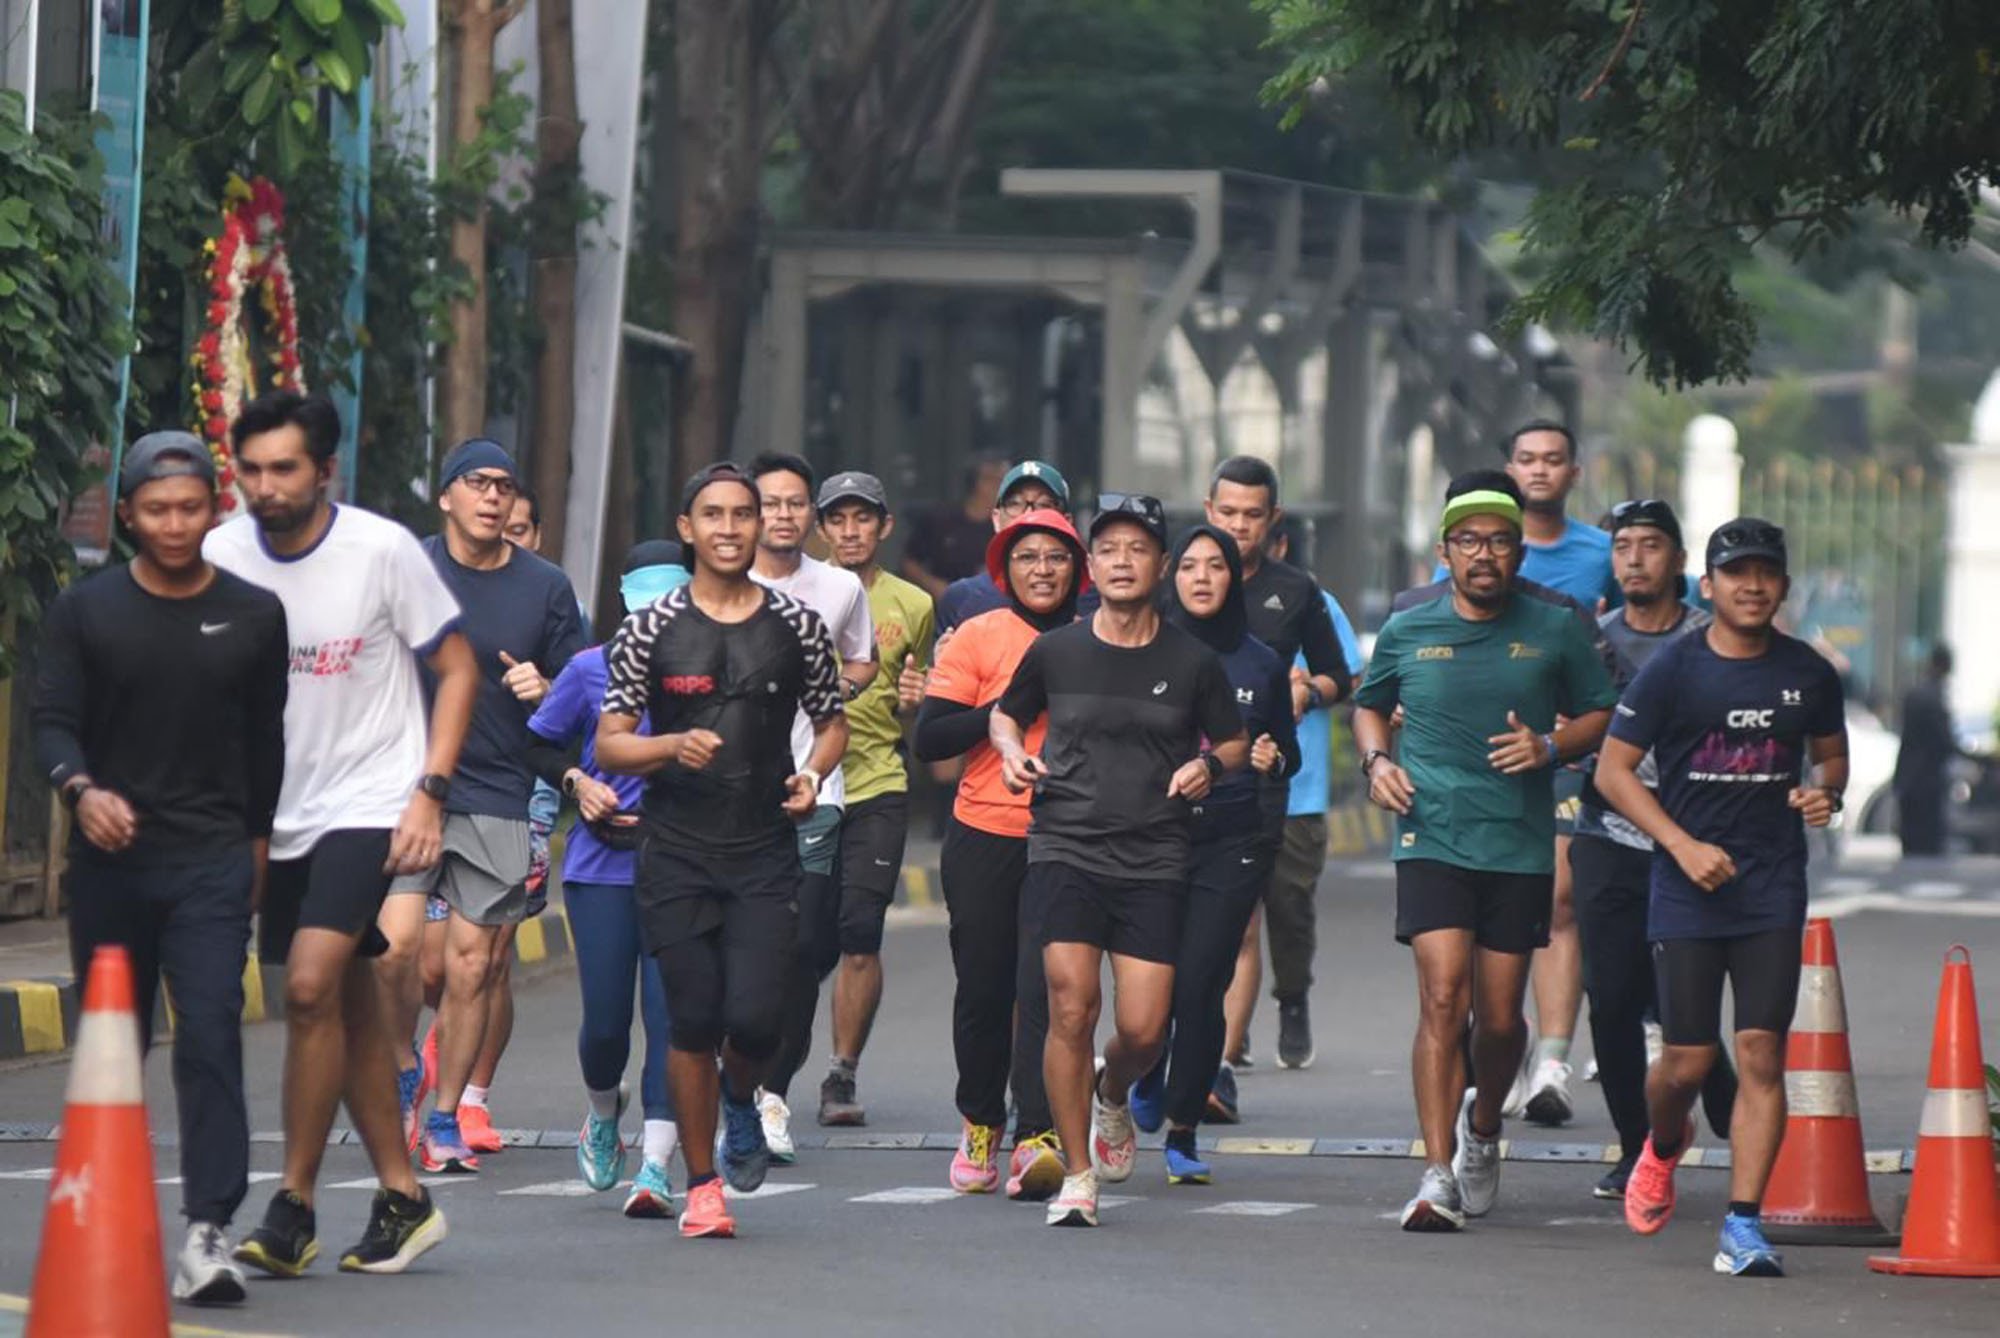 FRI RUN, Pertamina Ajak Seluruh Perwira Agar Lebih Sehat dengan Olahraga Lari